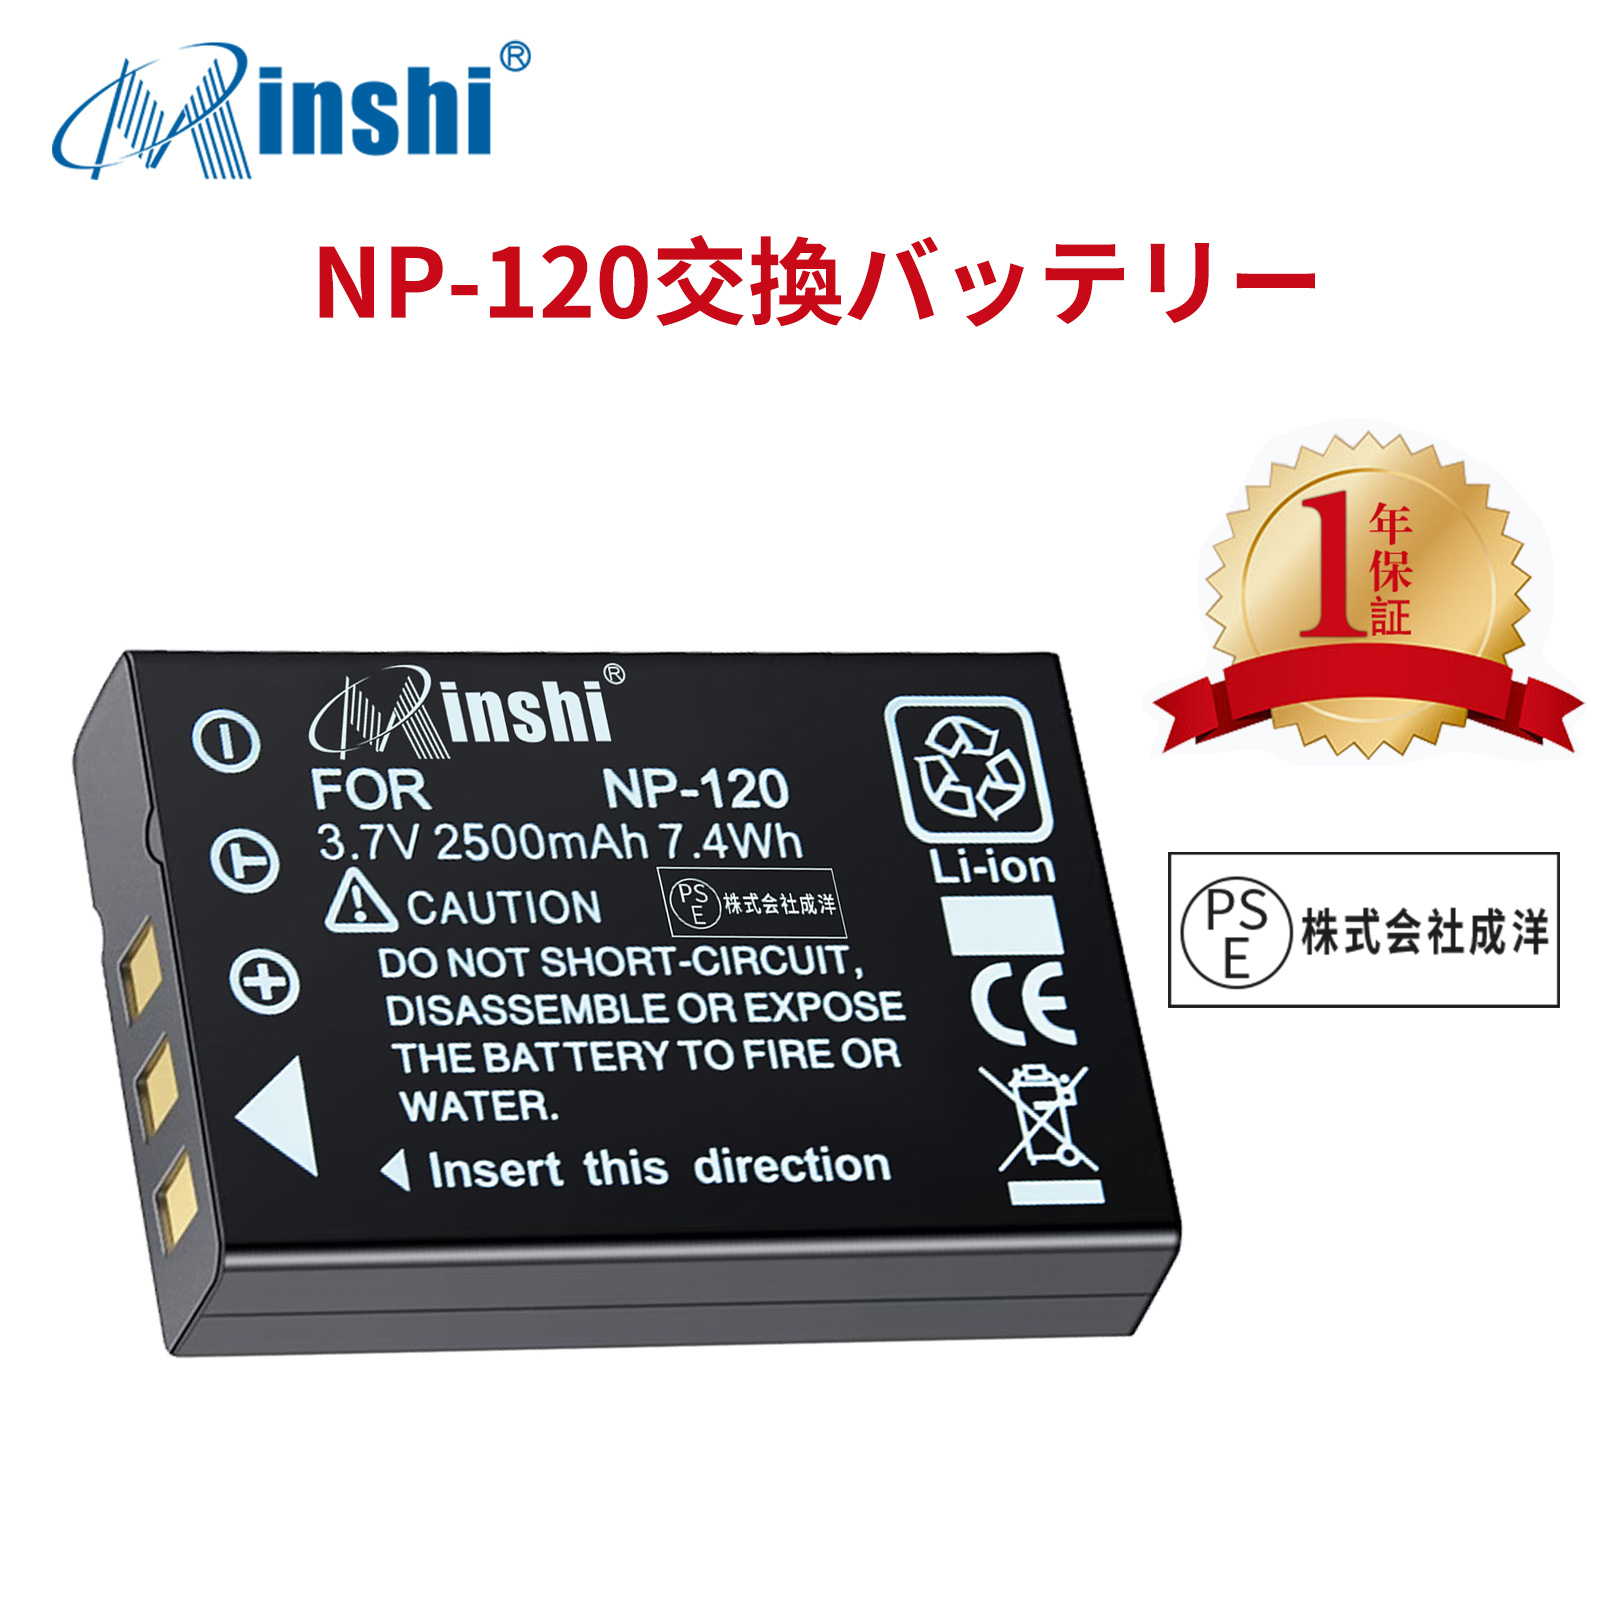 【1年保証】minshi FUJIFILM FinePix F10 Zoom DB-43 【2500mAh 3.7V】 高品質交換用バッテリー